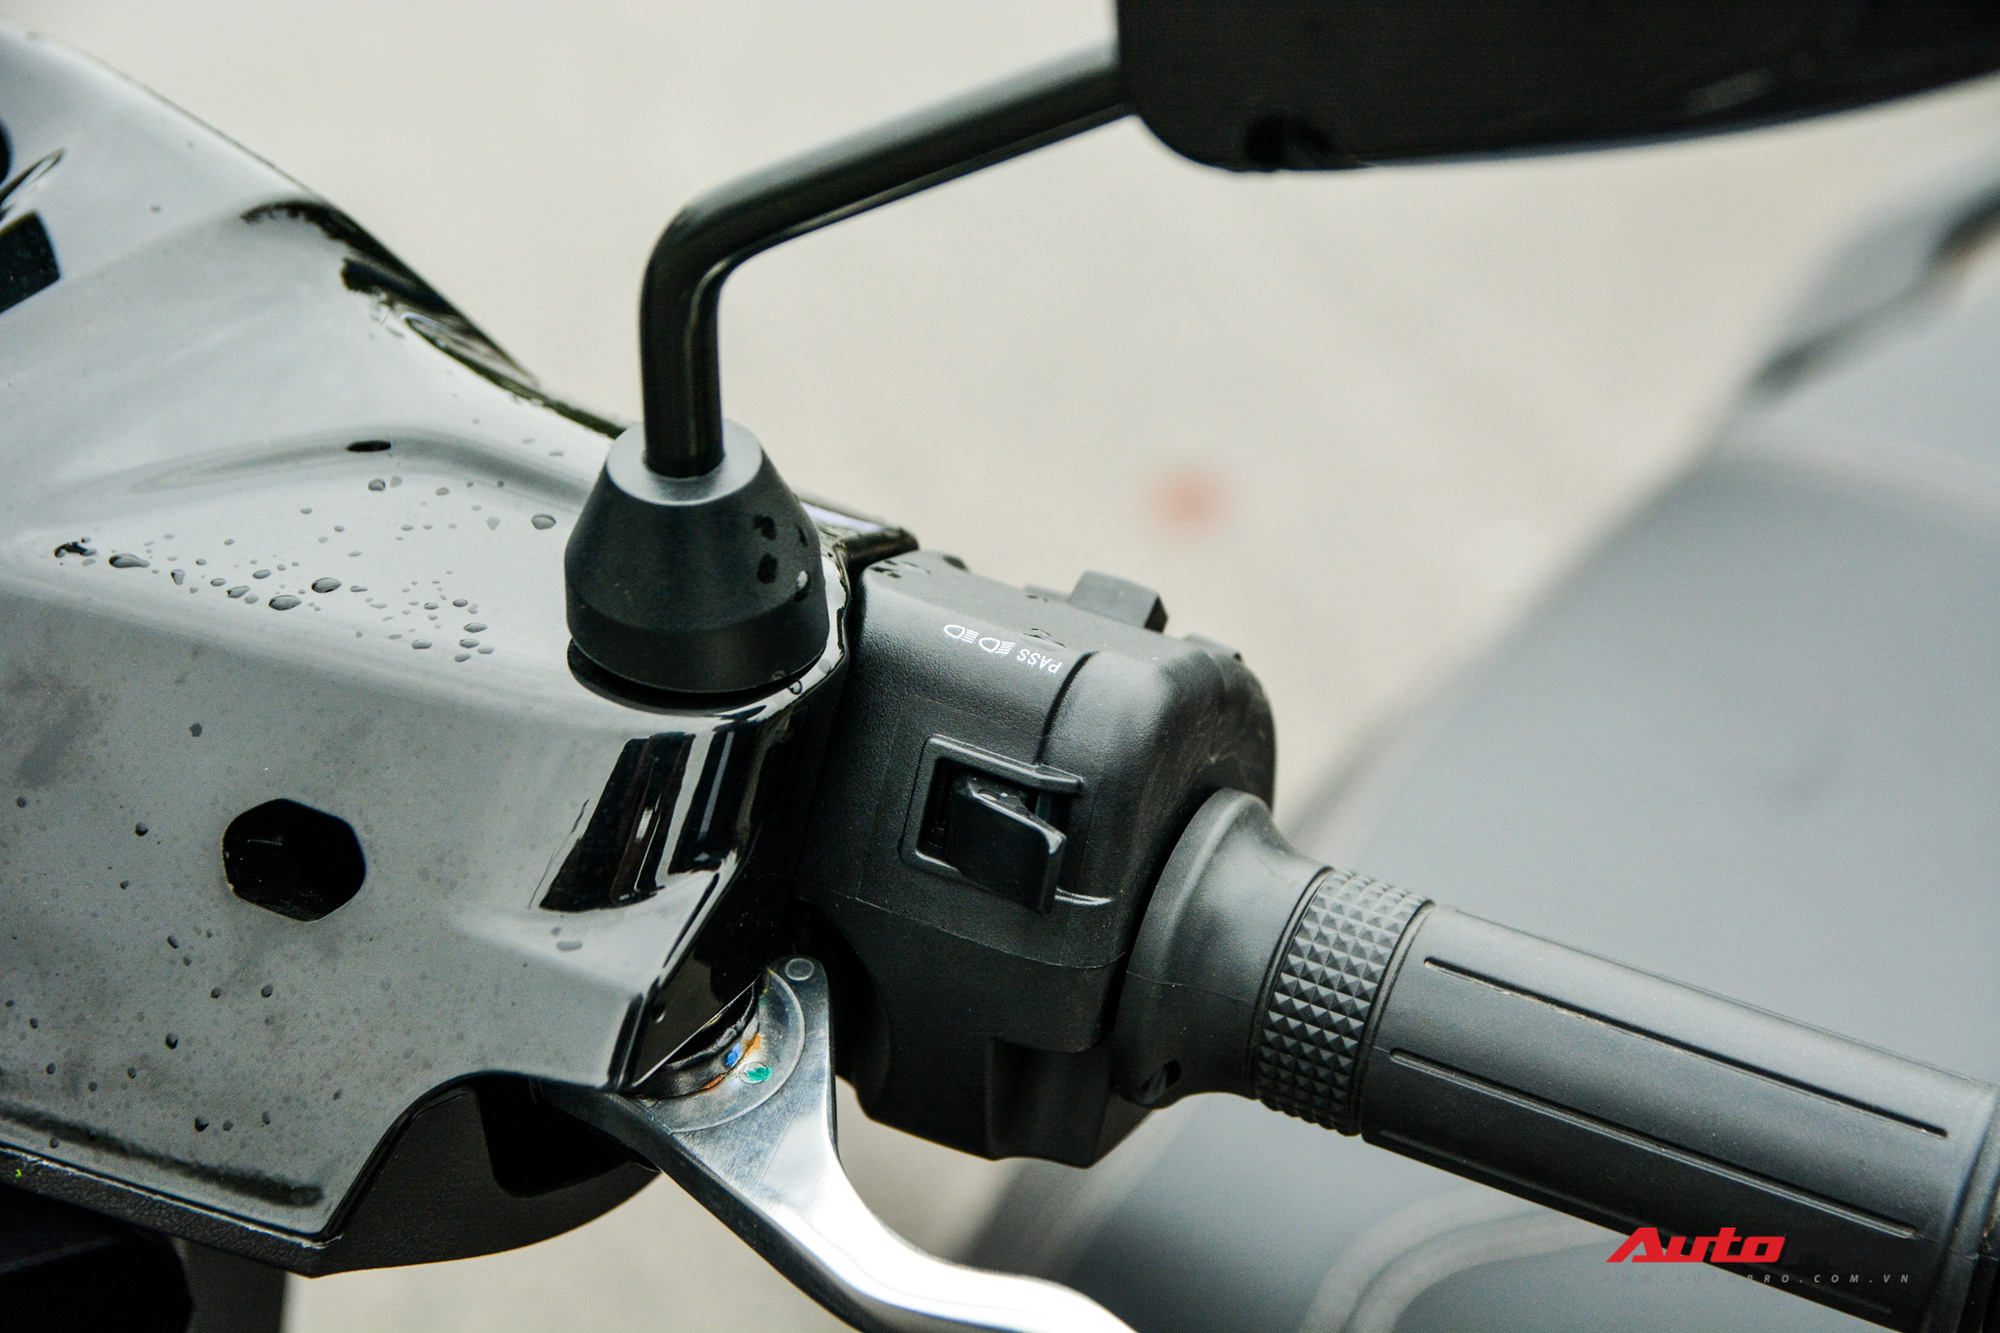 Ra mắt VinFast Theon: Xe máy điện to như Honda SH, có ABS 2 kênh và nhiều công nghệ ‘xịn xò’ khác - Ảnh 8.